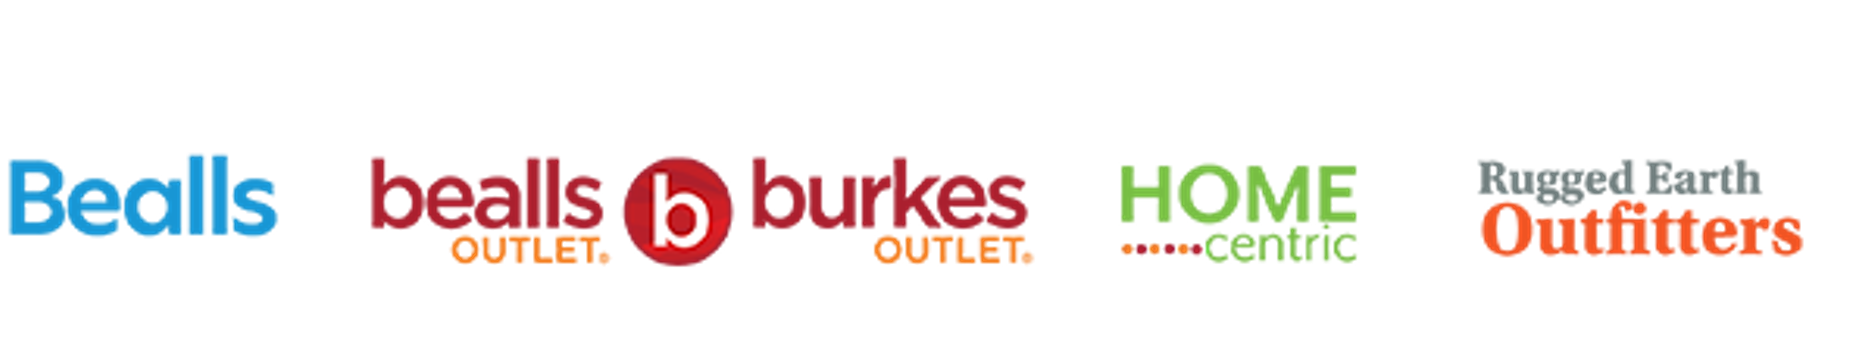 Bealls & Burkes Outlet Company Logo